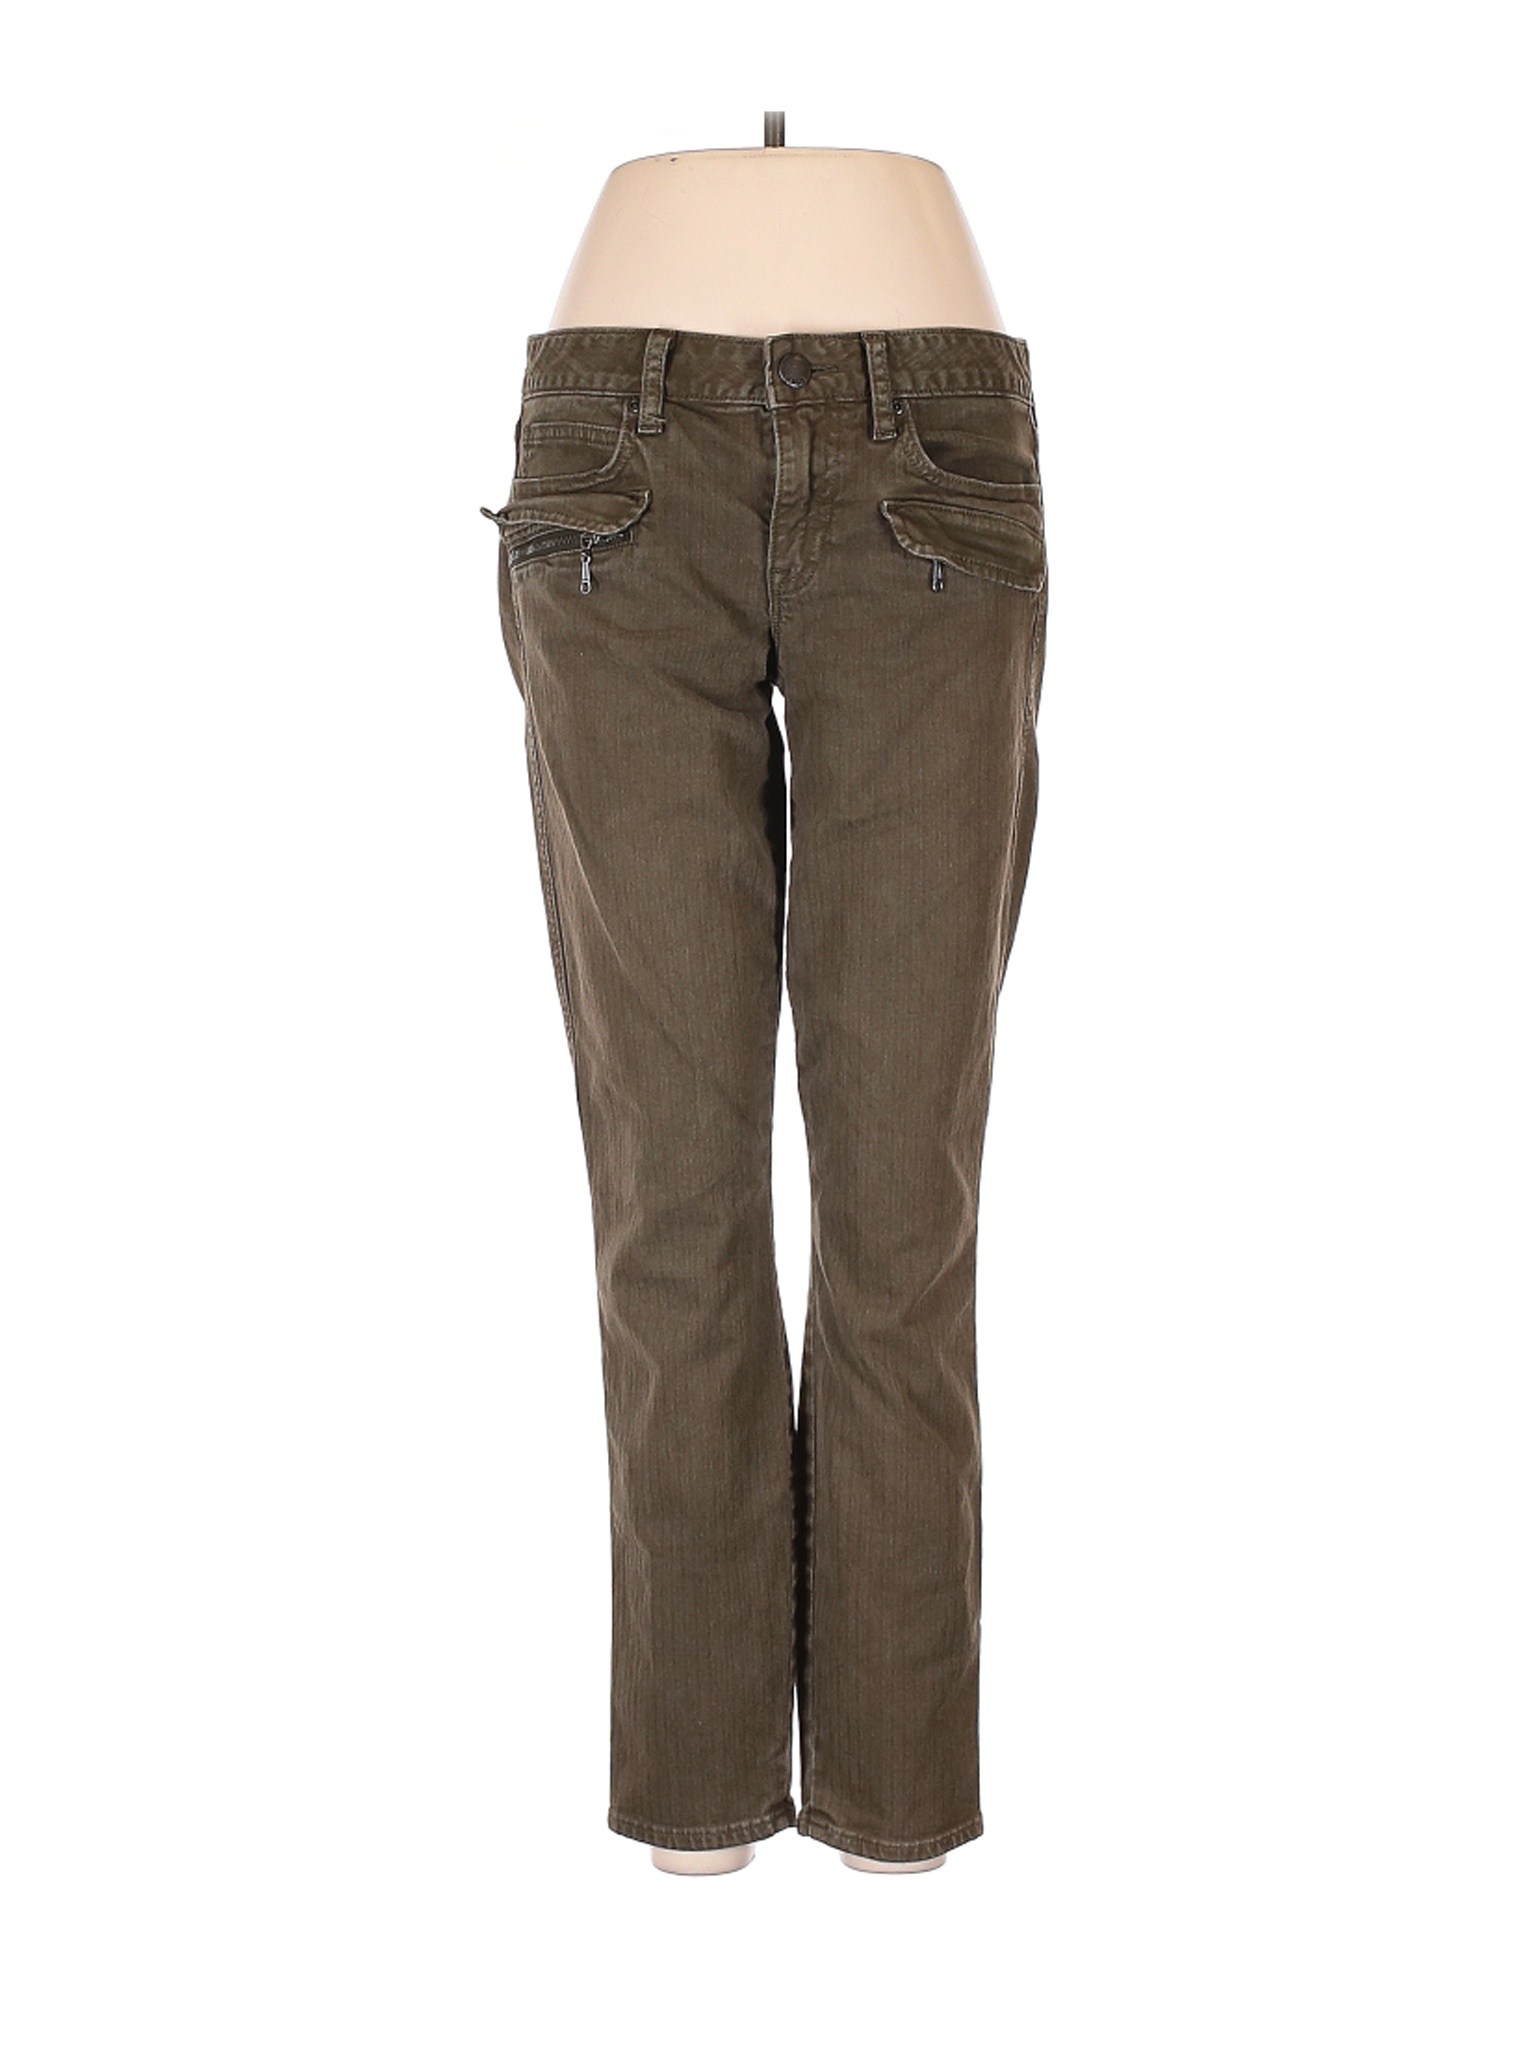 Gap Women Green Jeans 28W | eBay